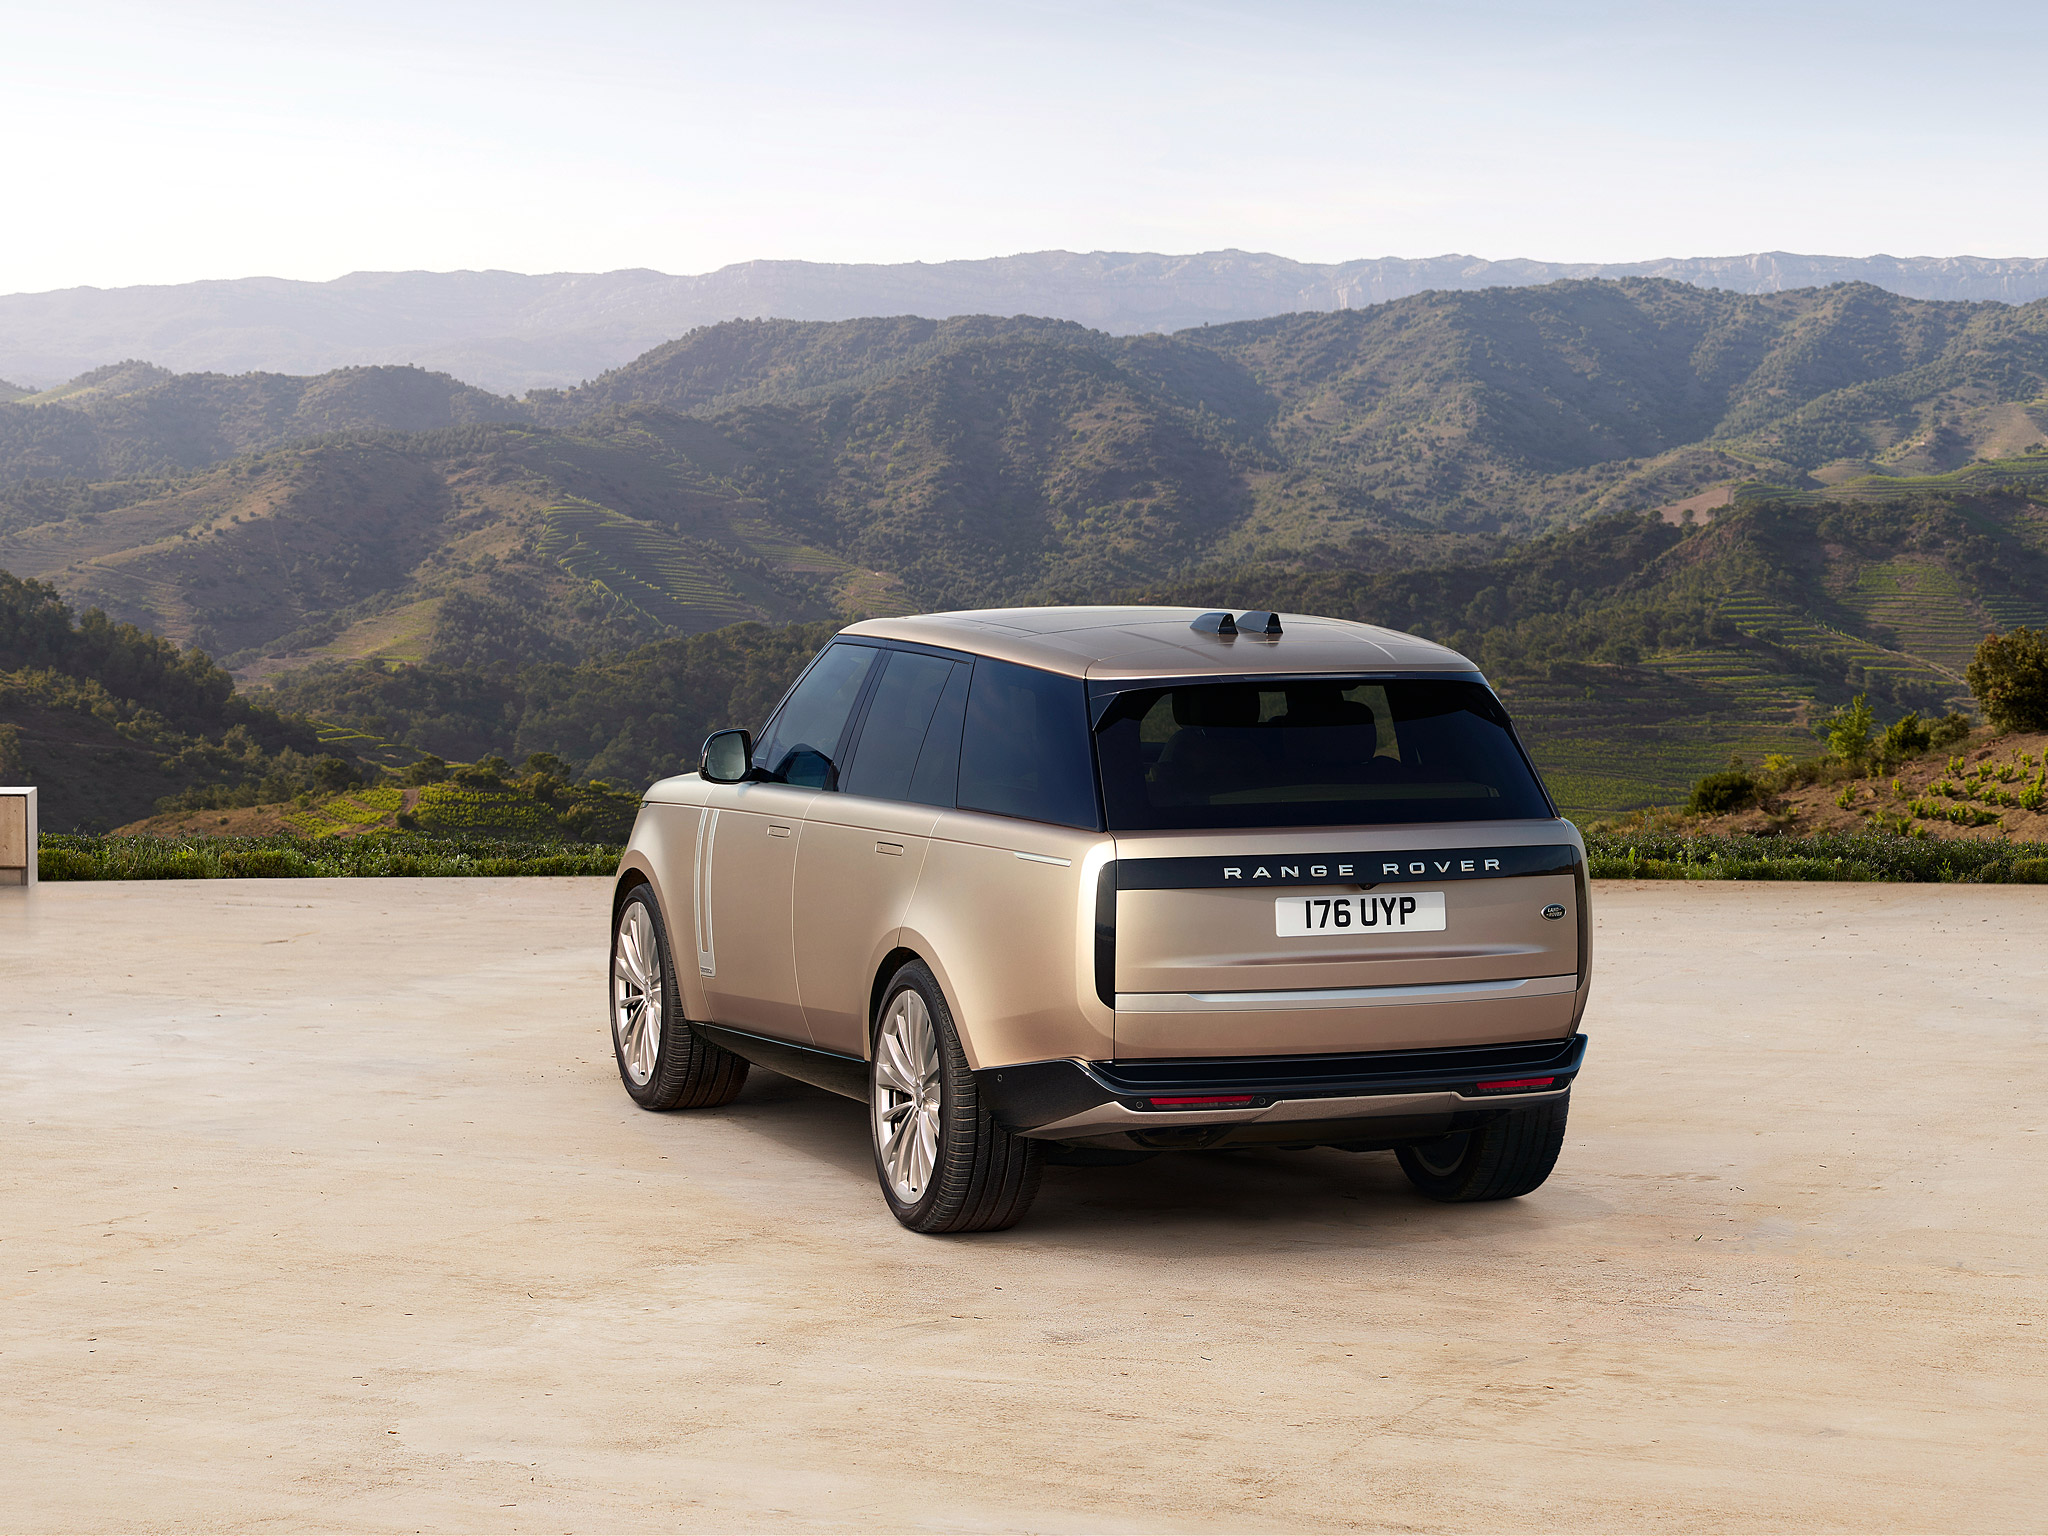  2022 Land Rover Range Rover Wallpaper.